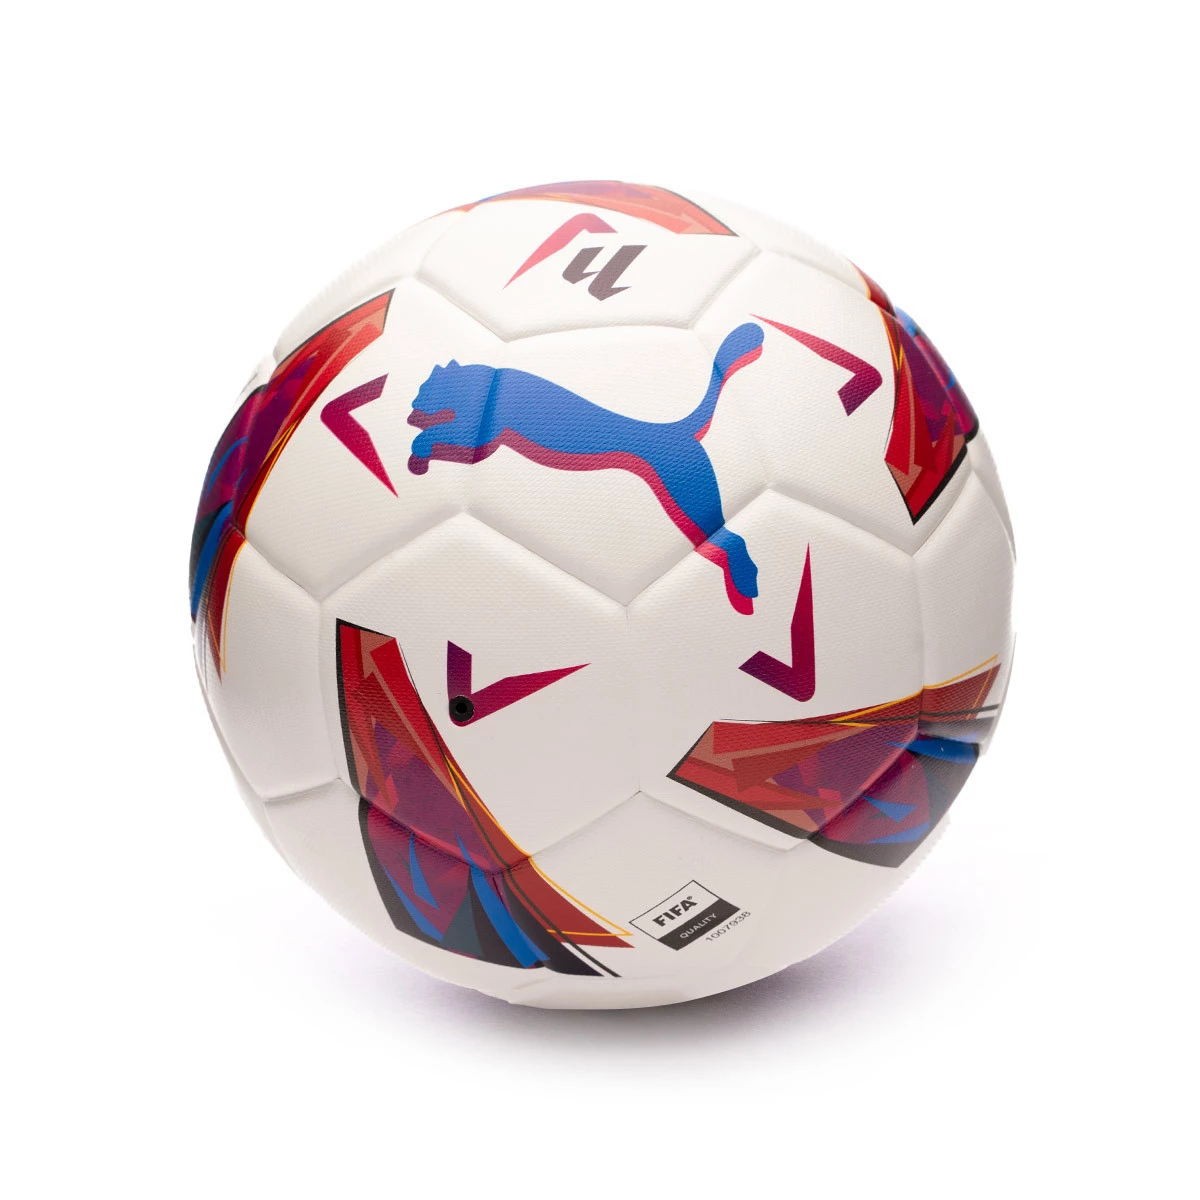 PUMA y LALIGA revelan el nuevo balón oficial para las próximas